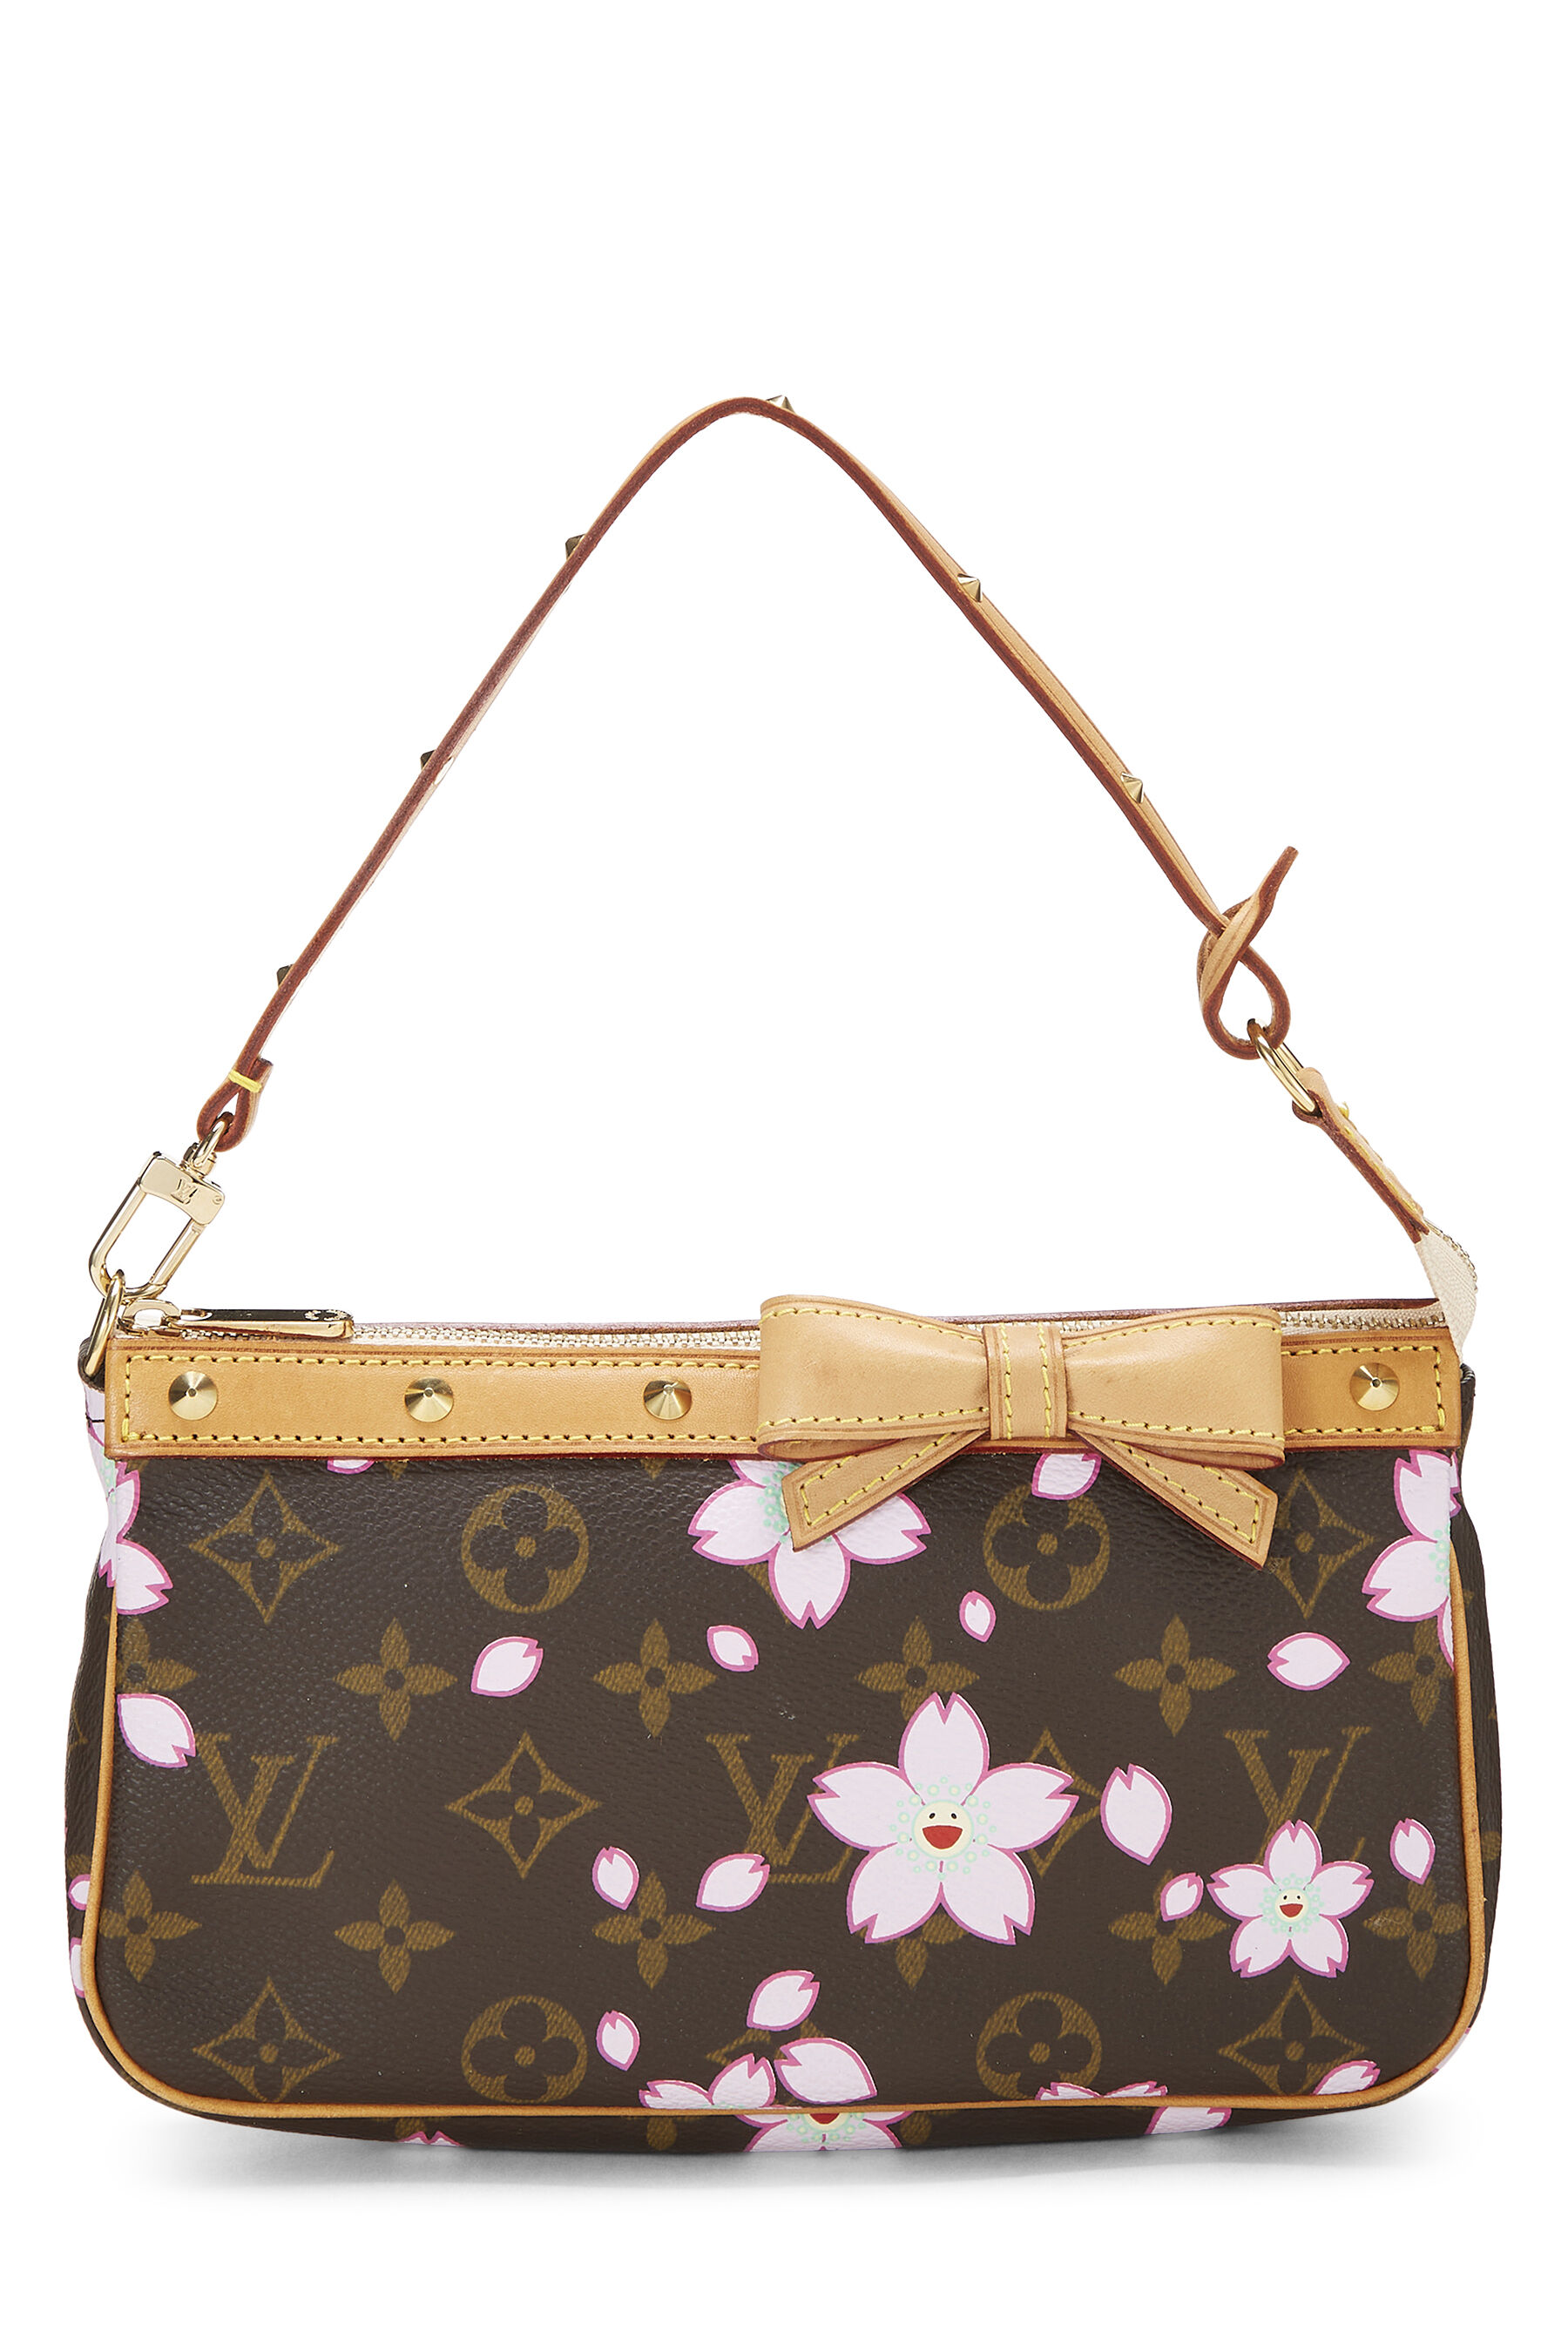 Louis Vuitton, Bags, Louis Vuitton Limited Edition Cherry Blossom Pochette  Purse